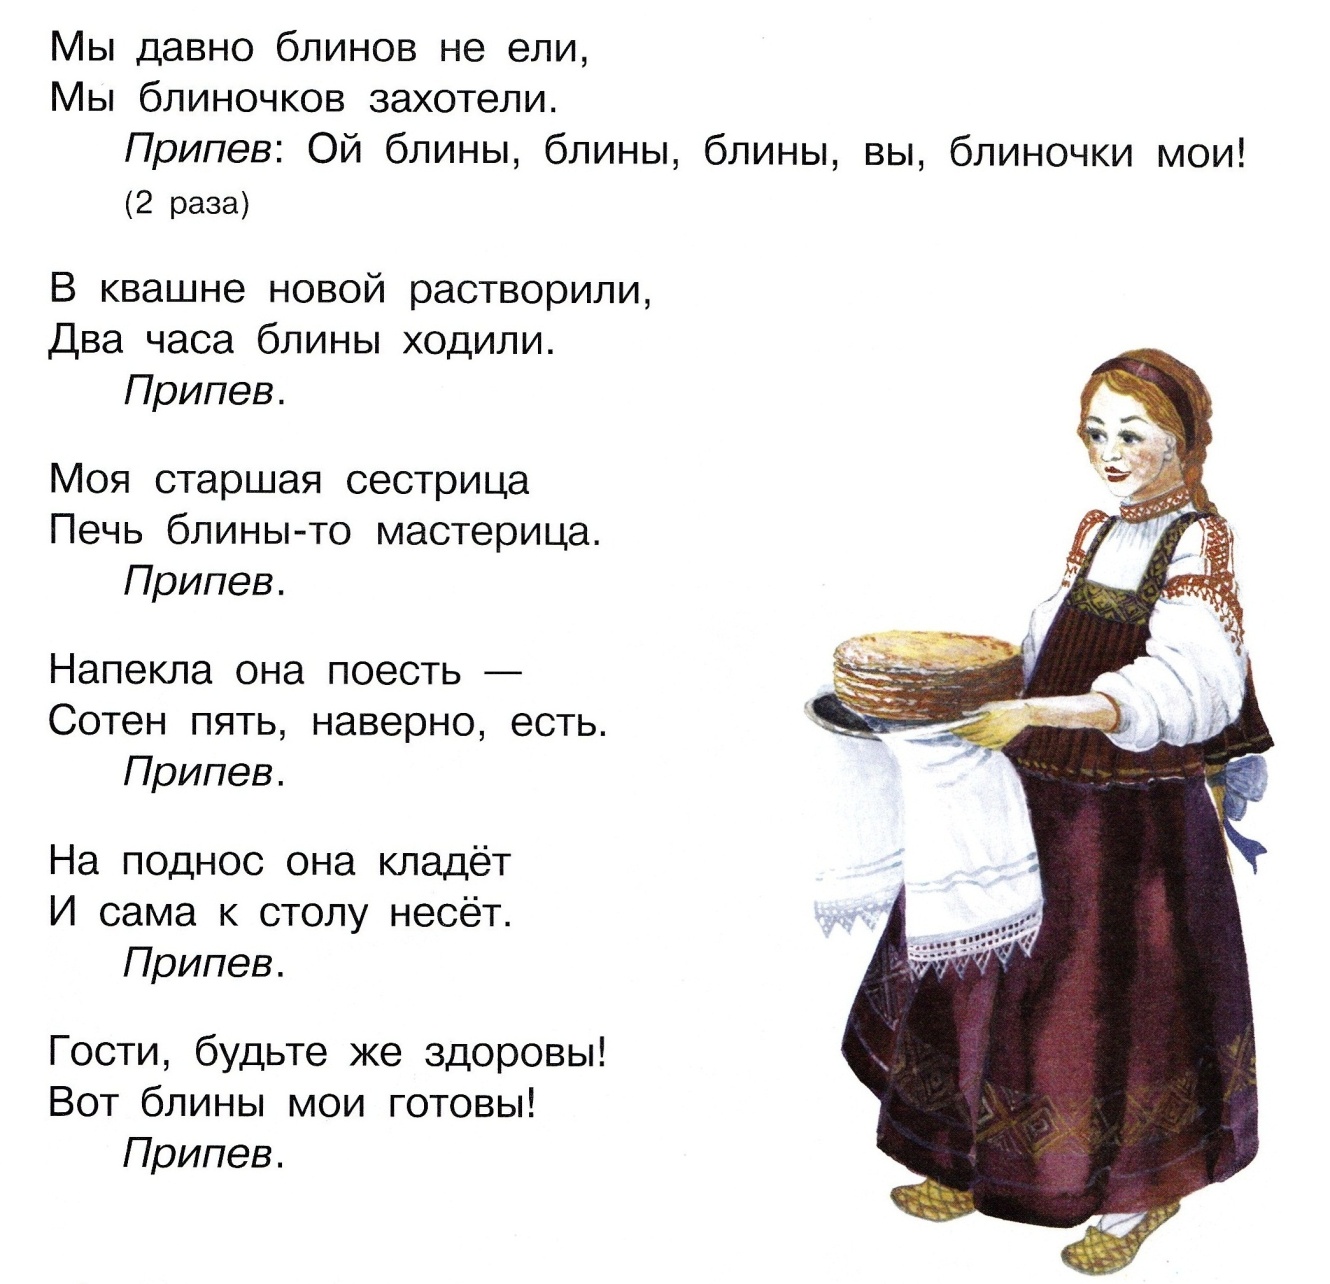 Тексты русских народных песен про блины